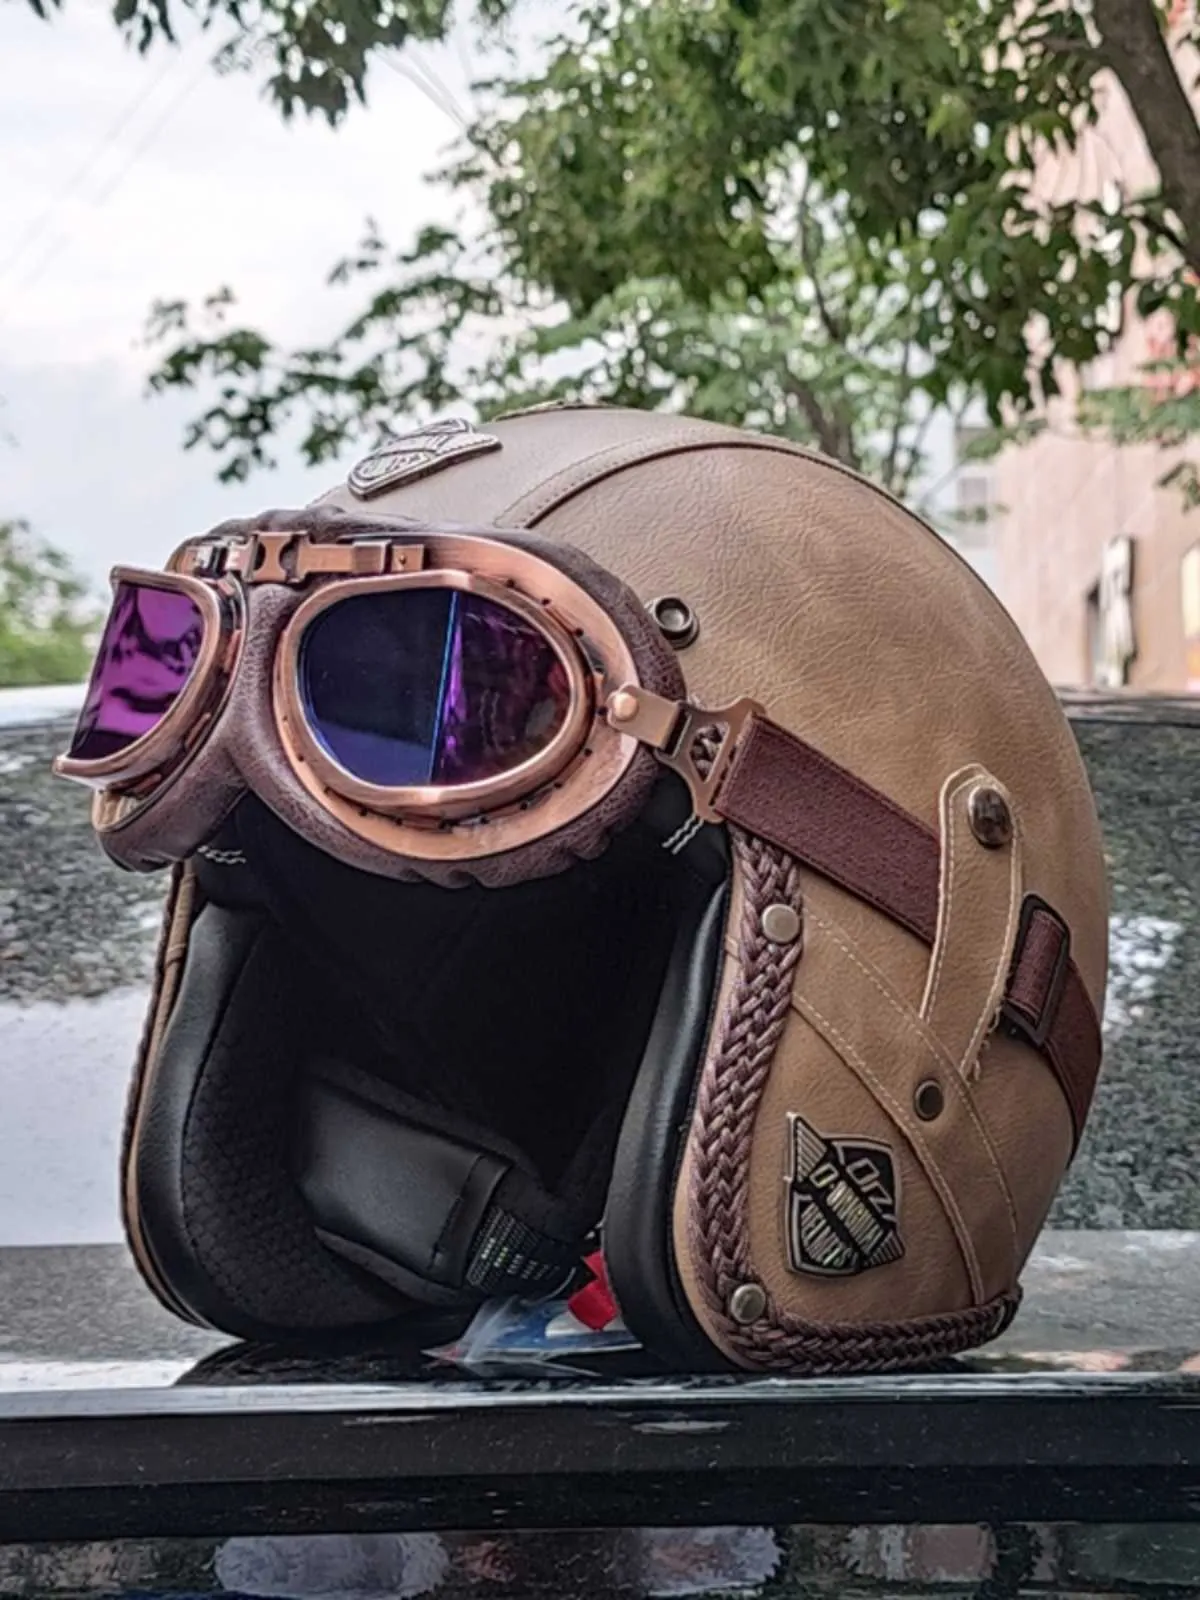 Casco Moto da uomo 3C e certificazione Dot casco integrale Moto casco Moto  casco in fibra di carbonio caschi da ciclismo retrò